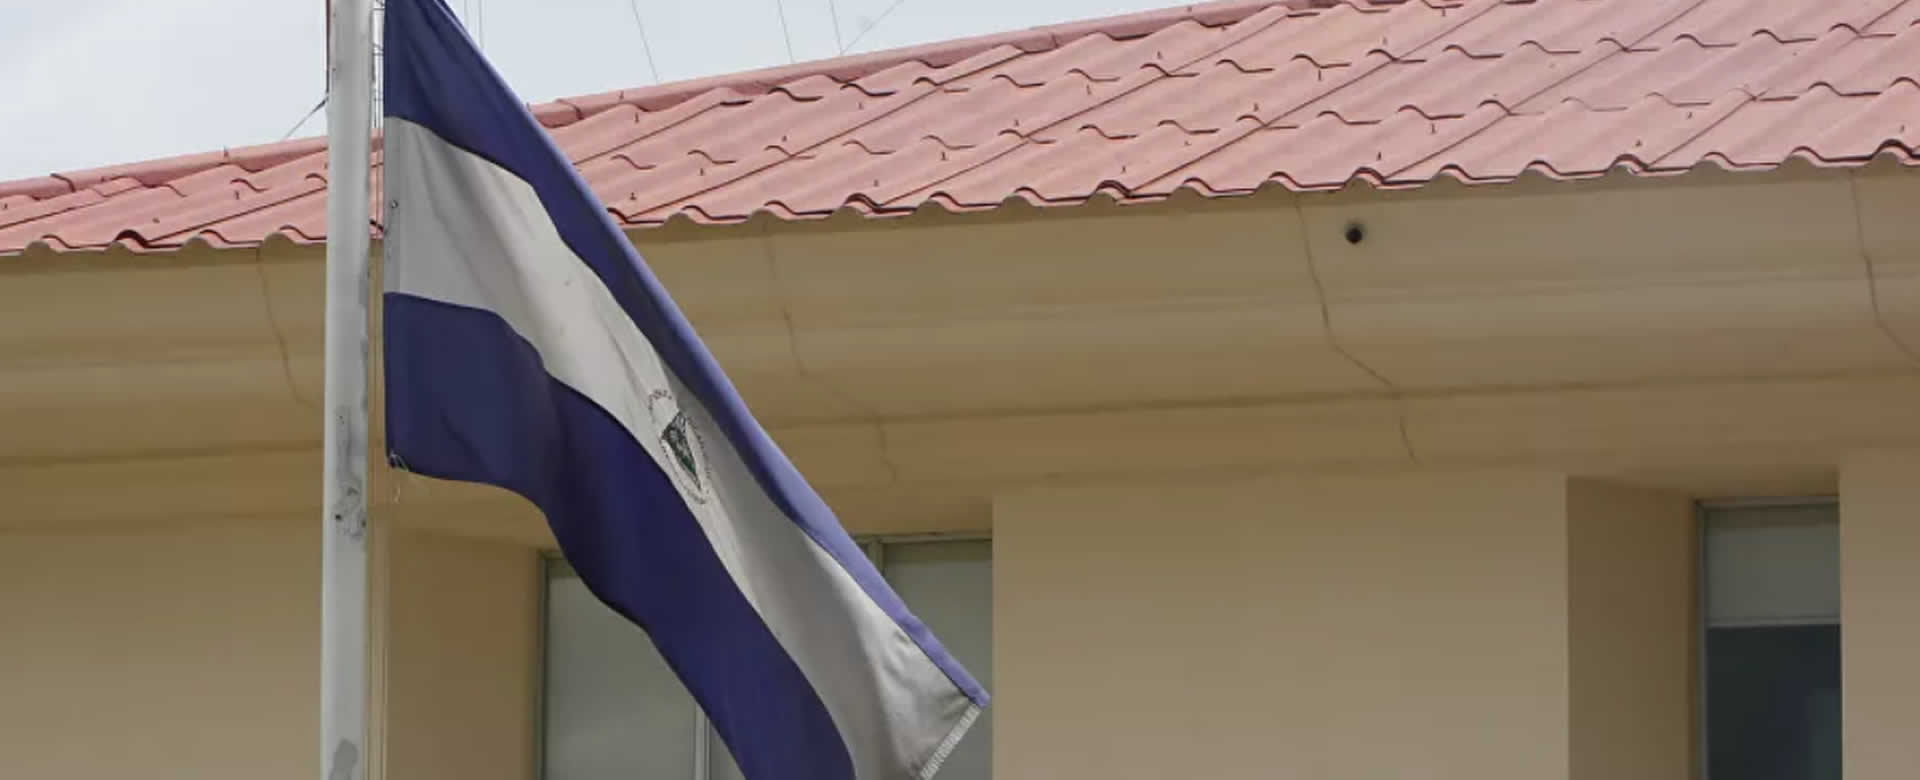 Nicaragua está preparada para enfrentar comportamiento injerencista con Ley de Agentes Extranjeros